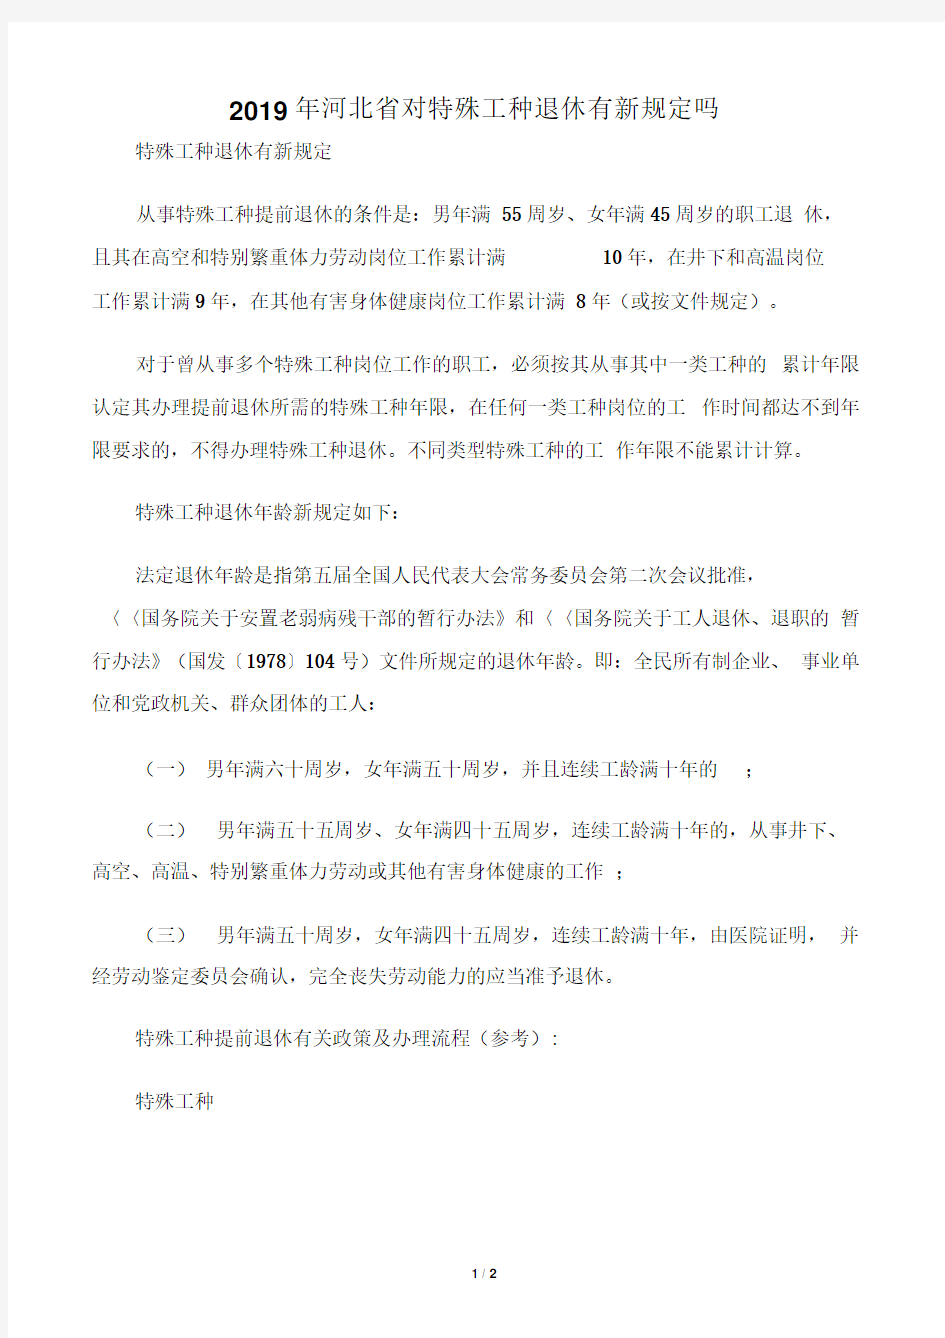 2019年河北省对特殊工种退休有新规定吗